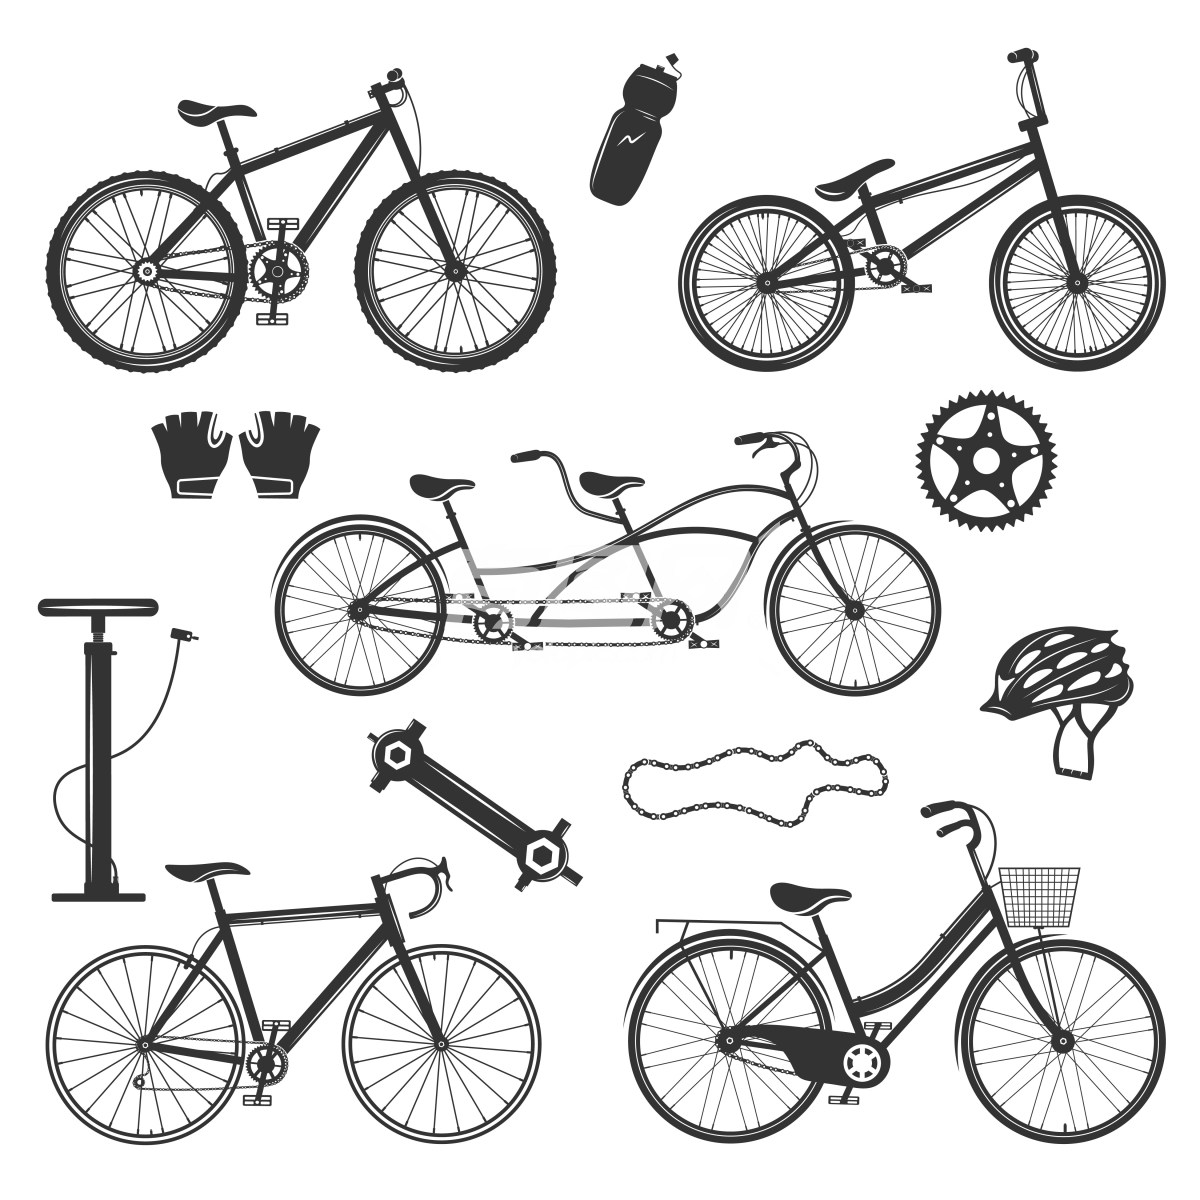 自行车主题黑白图片